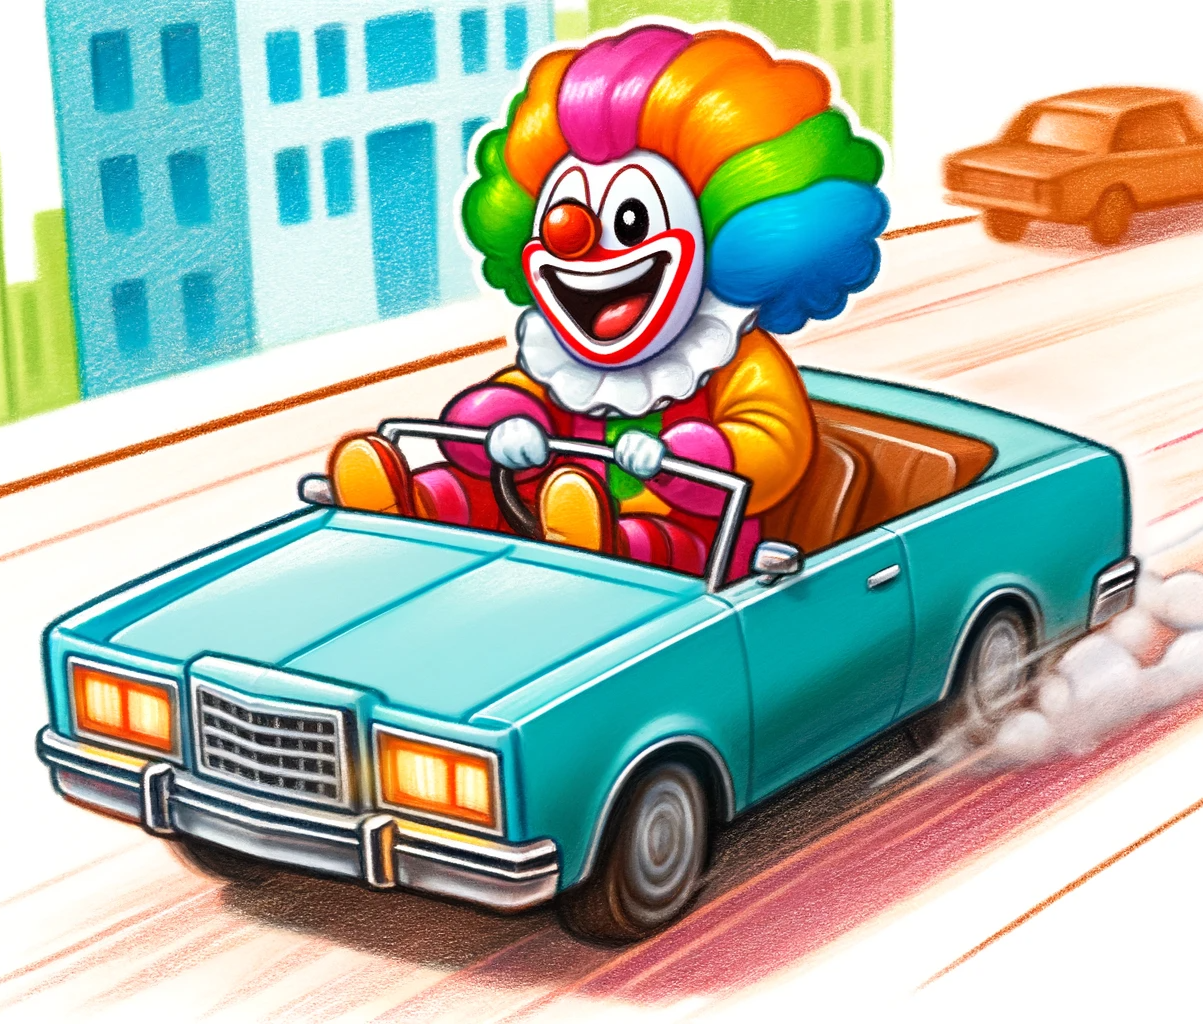 High Quality clown driving a car Blank Meme Template